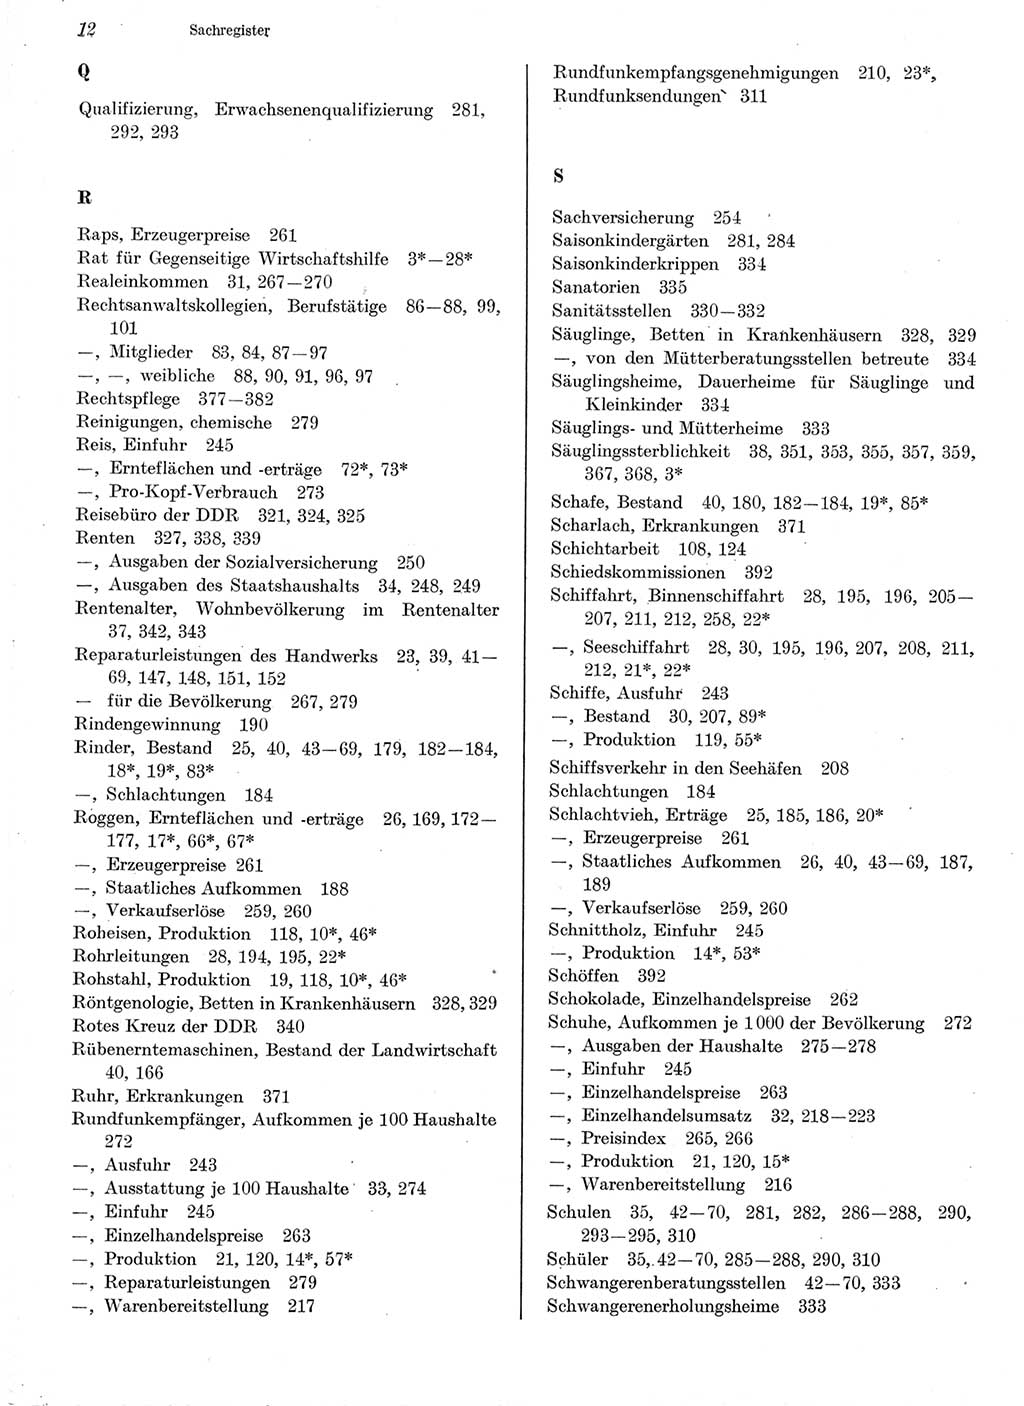 Statistisches Jahrbuch der Deutschen Demokratischen Republik (DDR) 1978, Seite 12 (Stat. Jb. DDR 1978, S. 12)